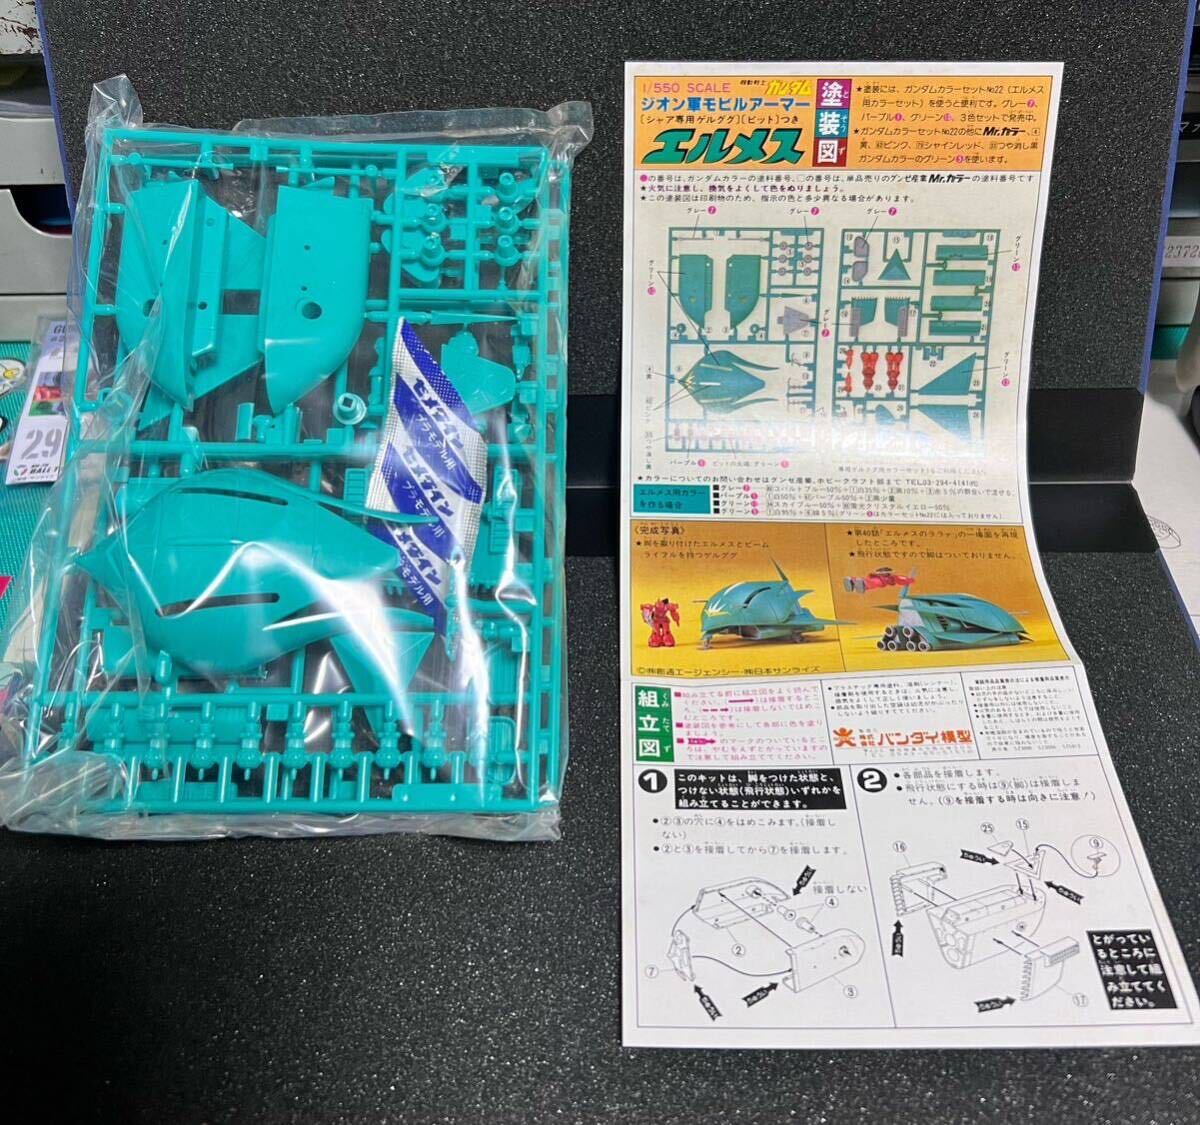  Mobile Suit Gundam Hermes lala.sn специальный mobi искусственная приманка ma- Bandai пластиковая модель не комплект для сборки старый красный Mark van The i Mark 